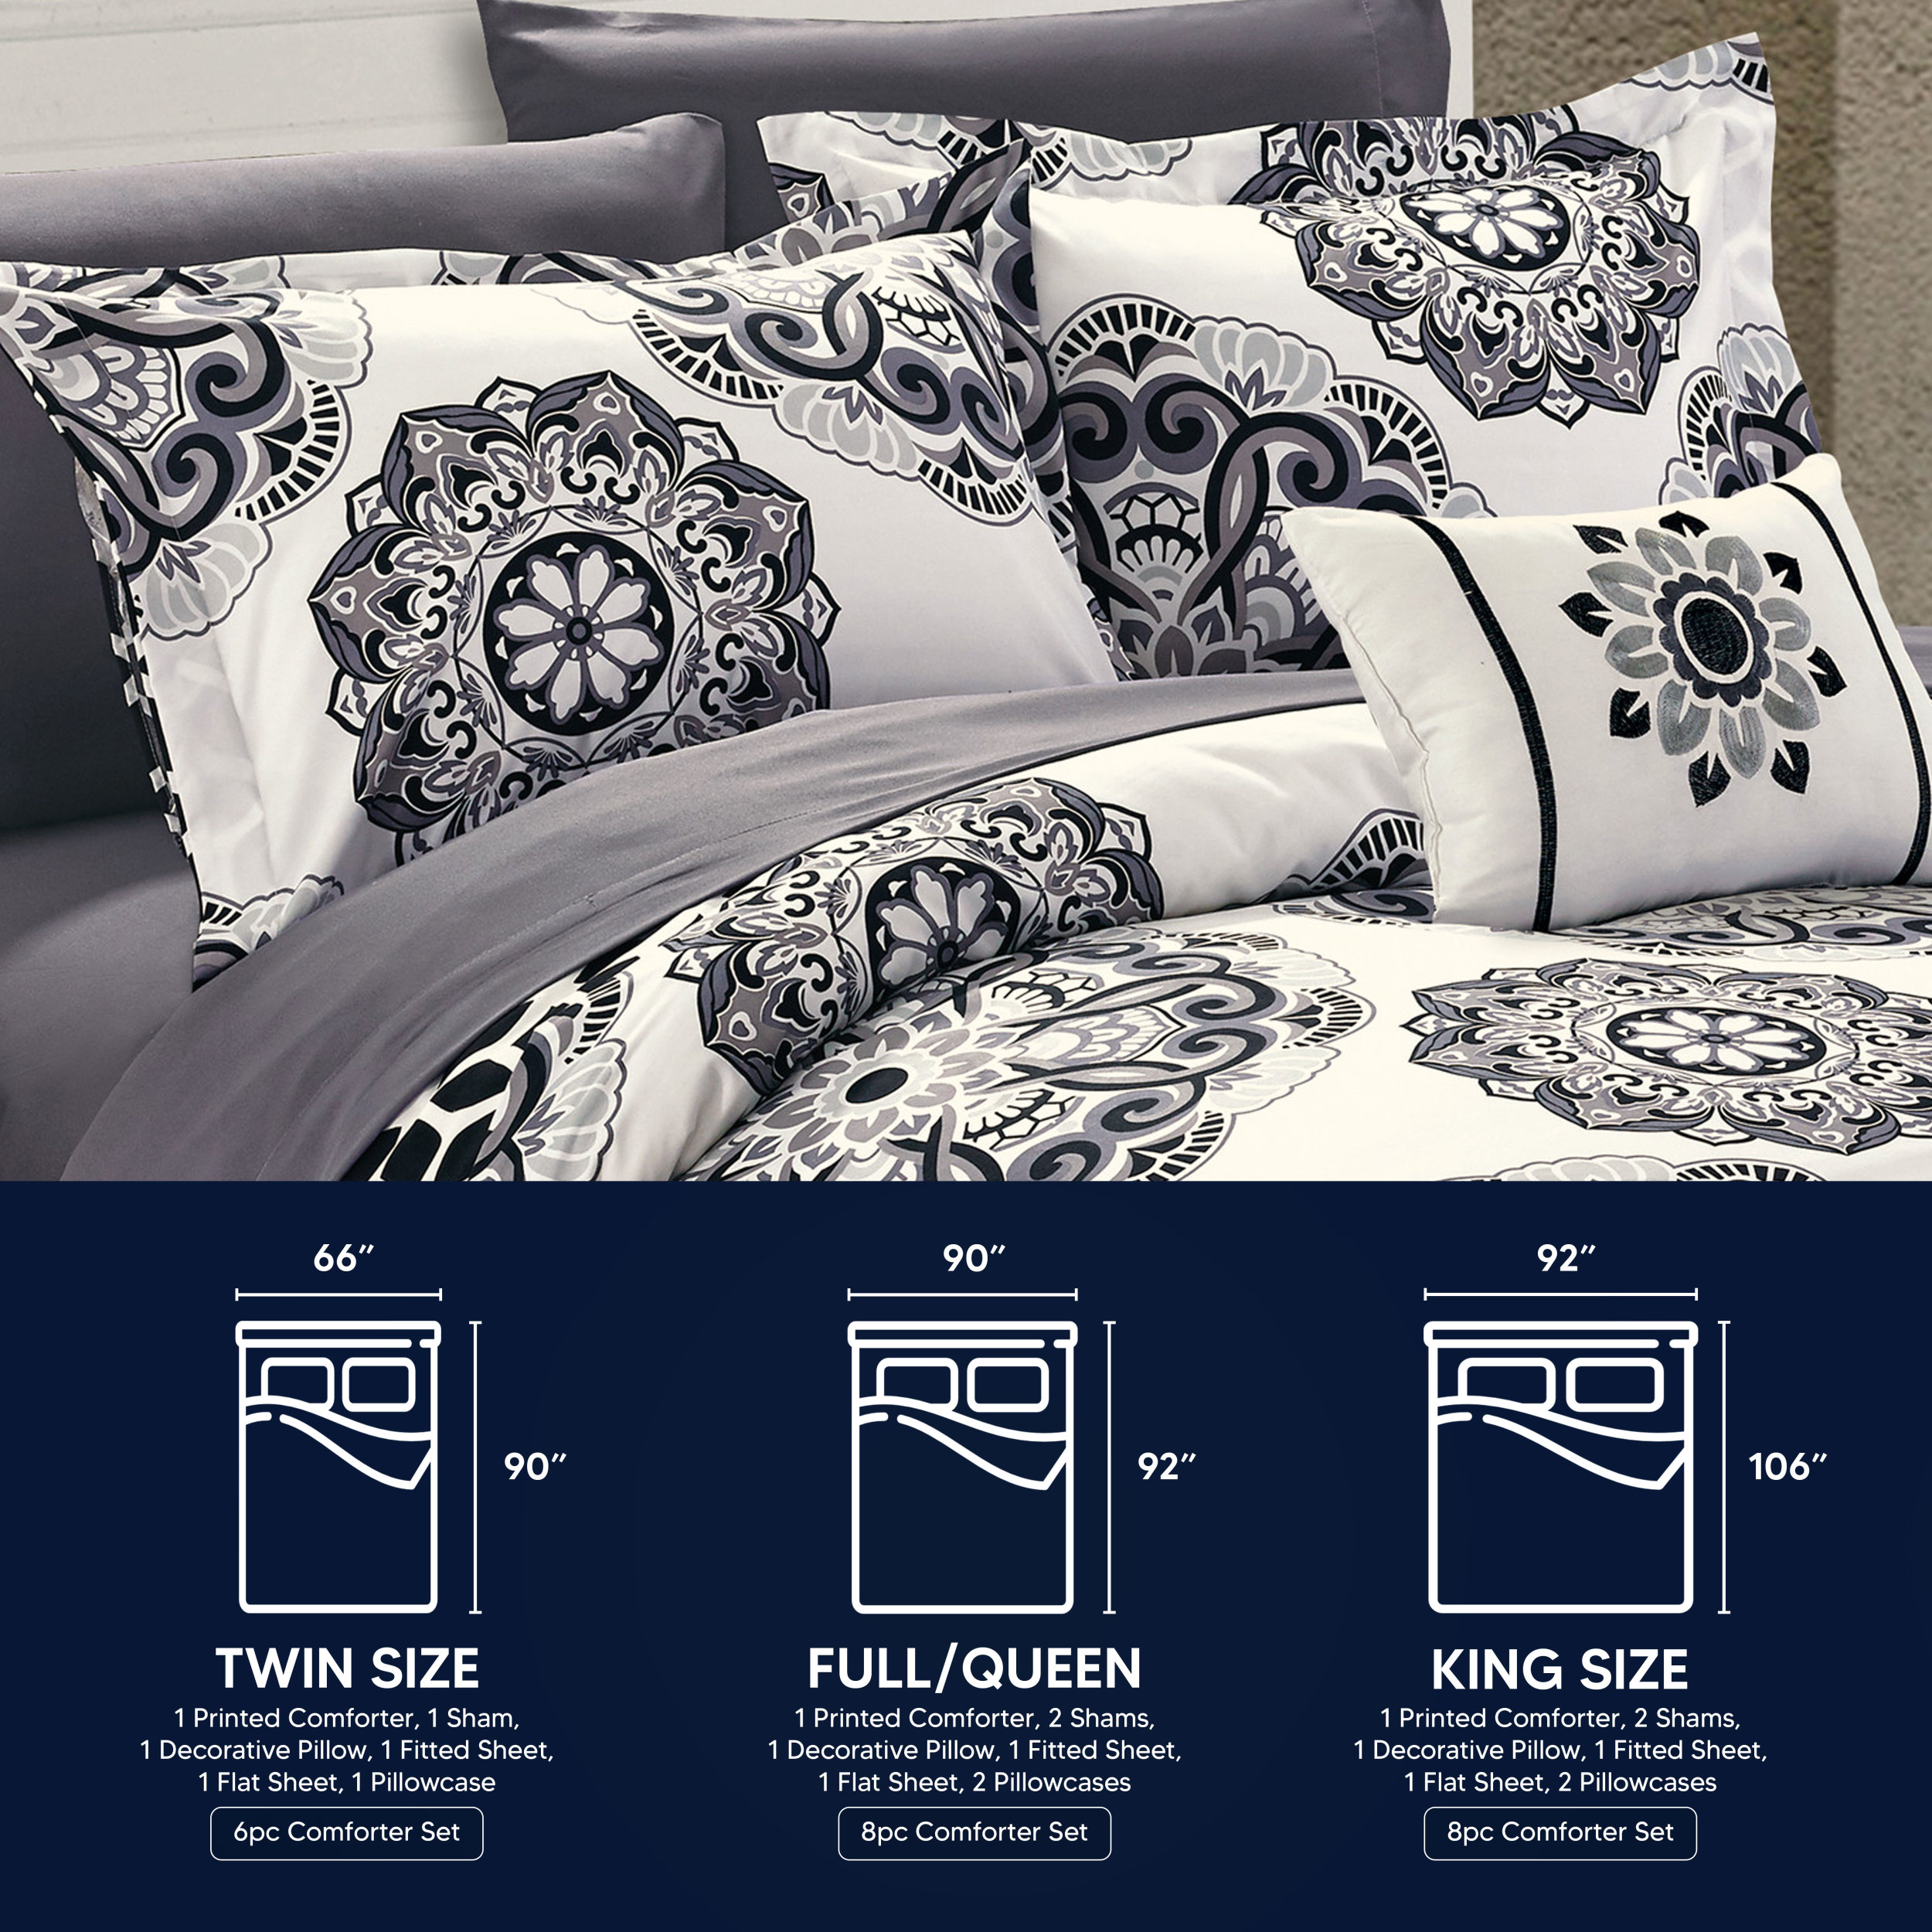 Chic Home Carlton Comforter Set - Queen 86x86, Burgundy - Queen 